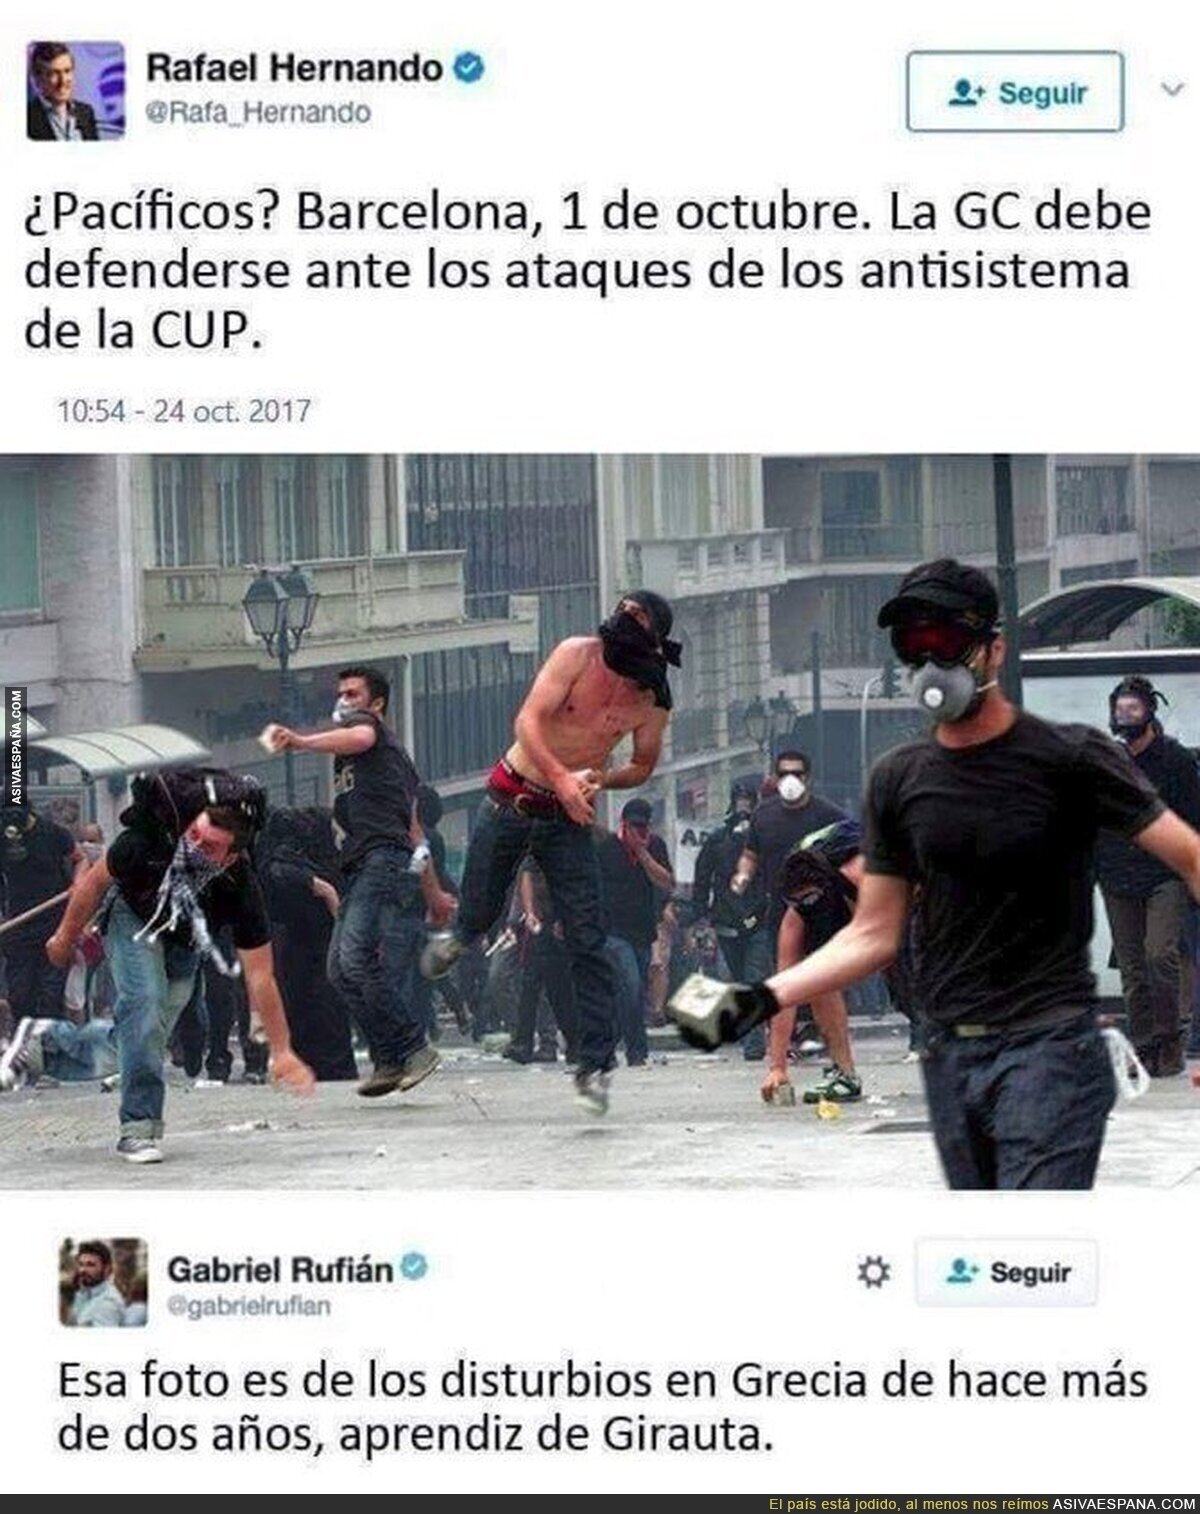 Rafael Hernando publica esta foto haciendo creer que es de Barcelona y le dejan retratado